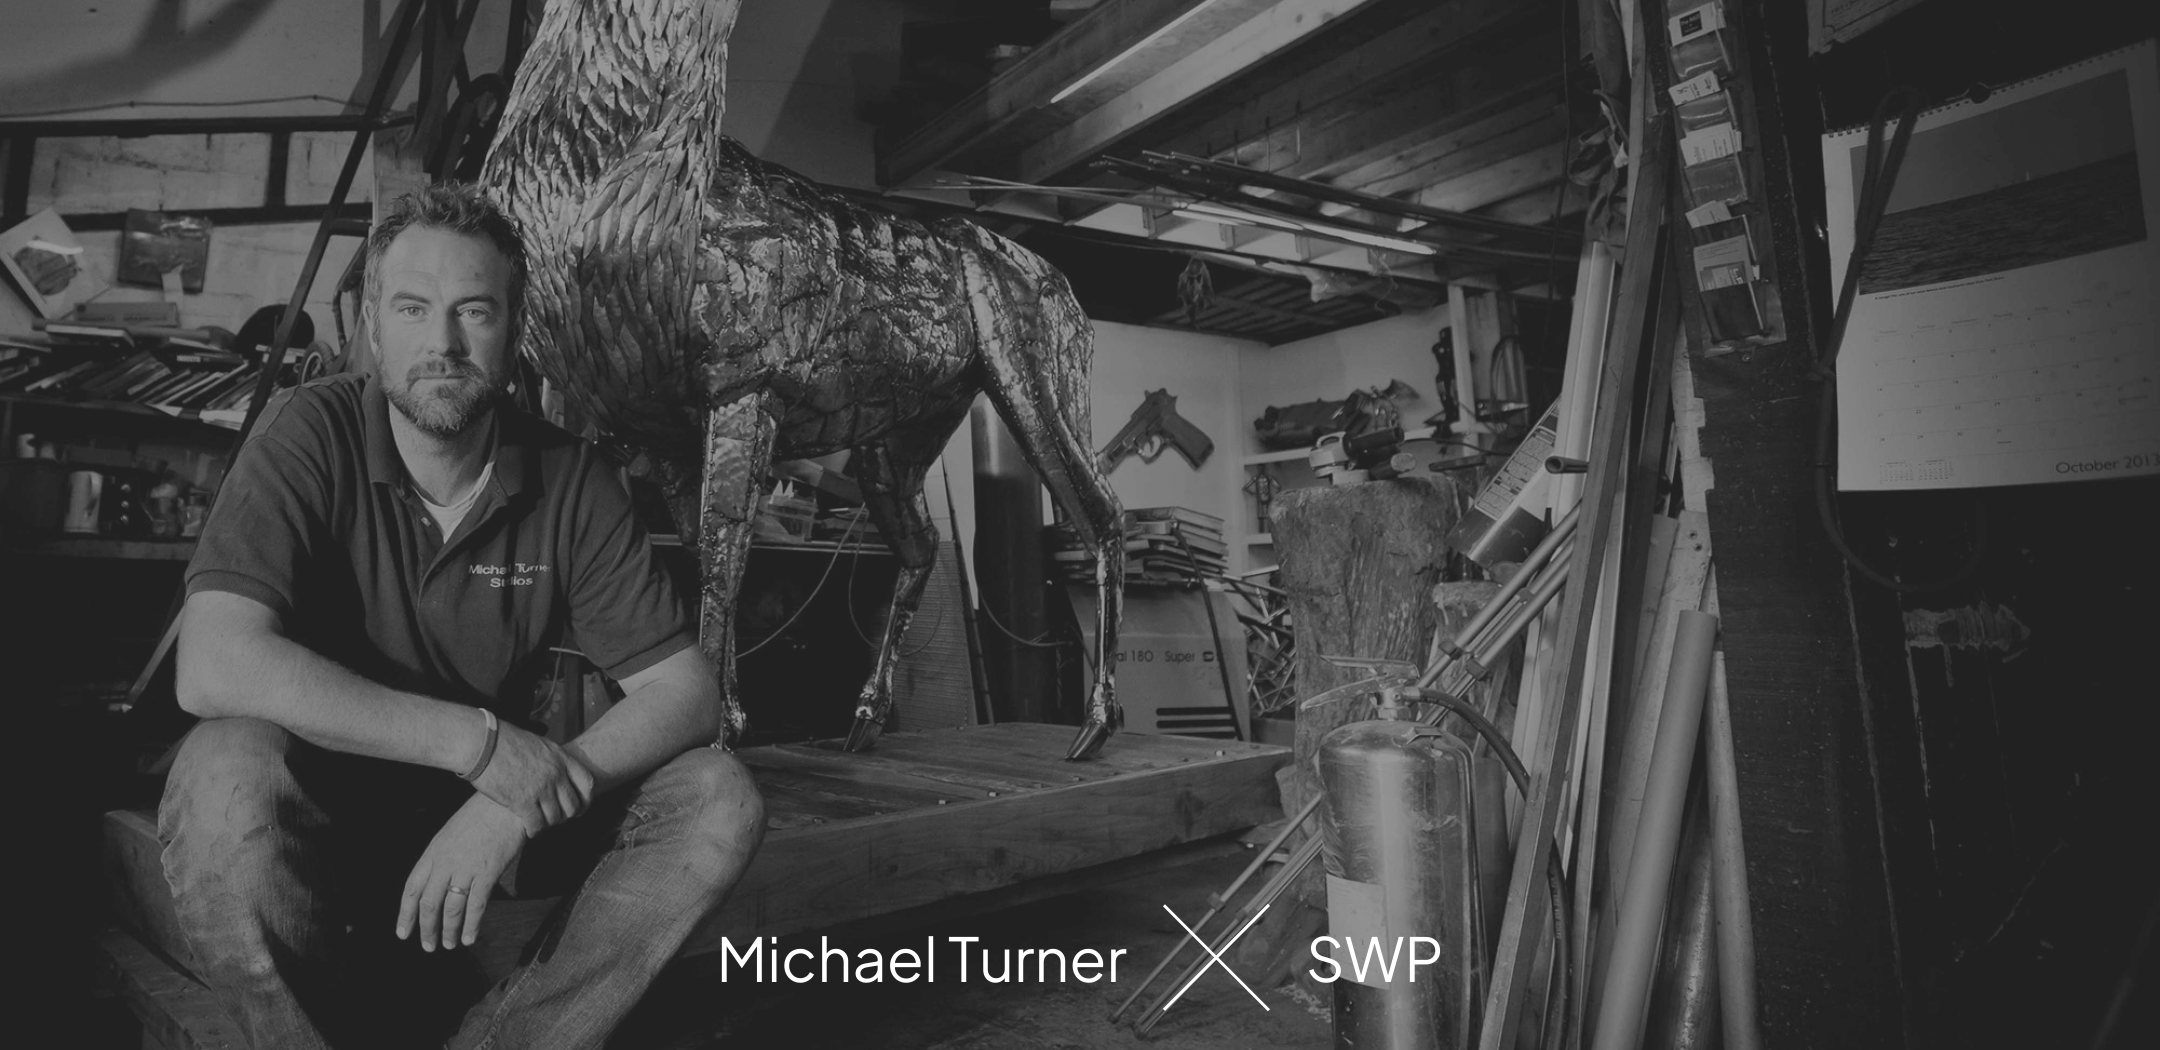 Michael Turner in his workshop